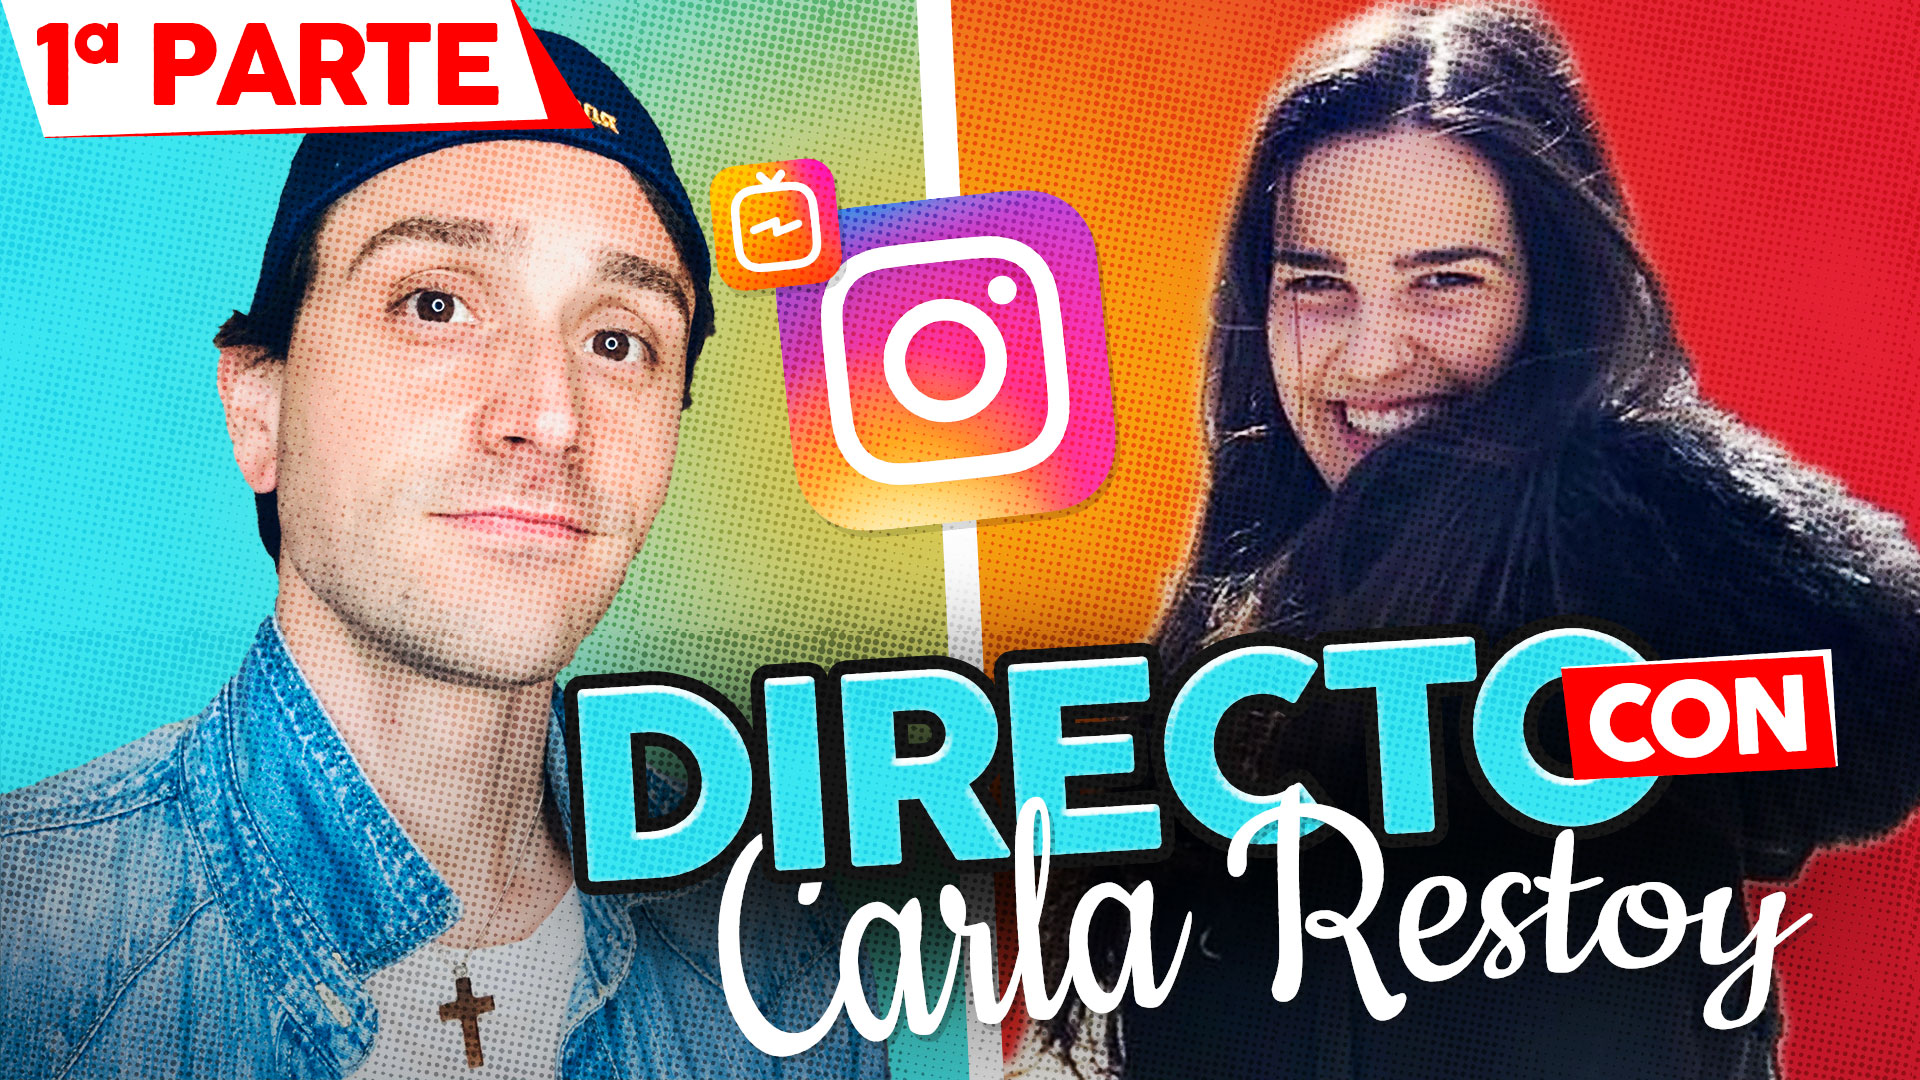 Directo en Instagram con Carla Restoy. Enriquísimo Tv canal católico de YouTube y Tik Tok. Enrique Vidal Flores